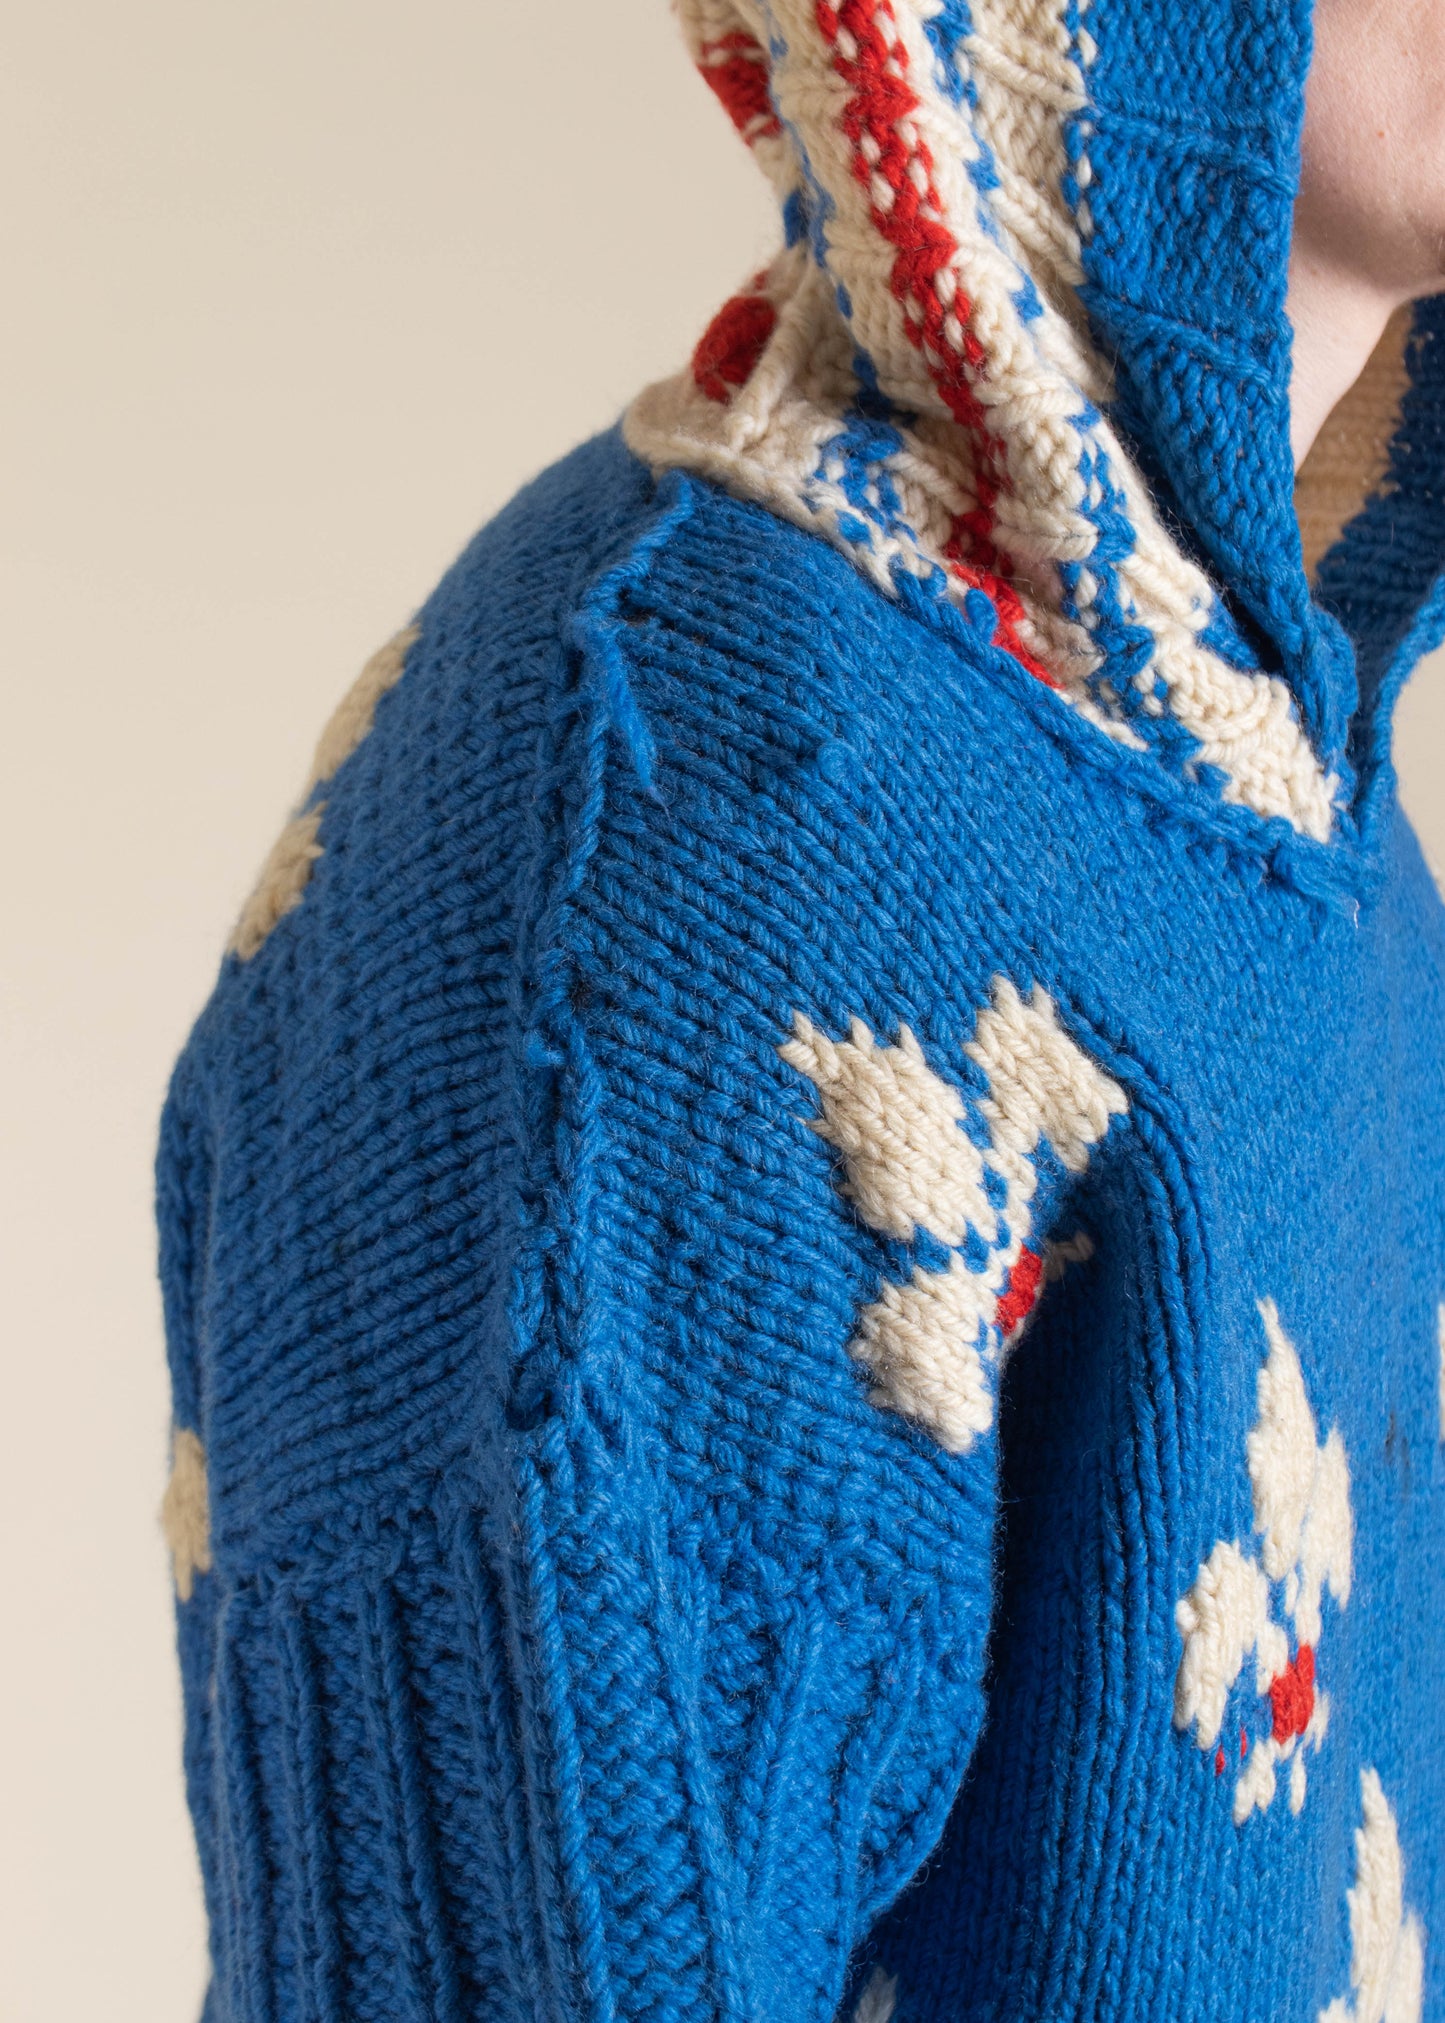 1980s Fleurs De Lys Pattern Hooded Heavy Knit Pullover Sweater Size M/L